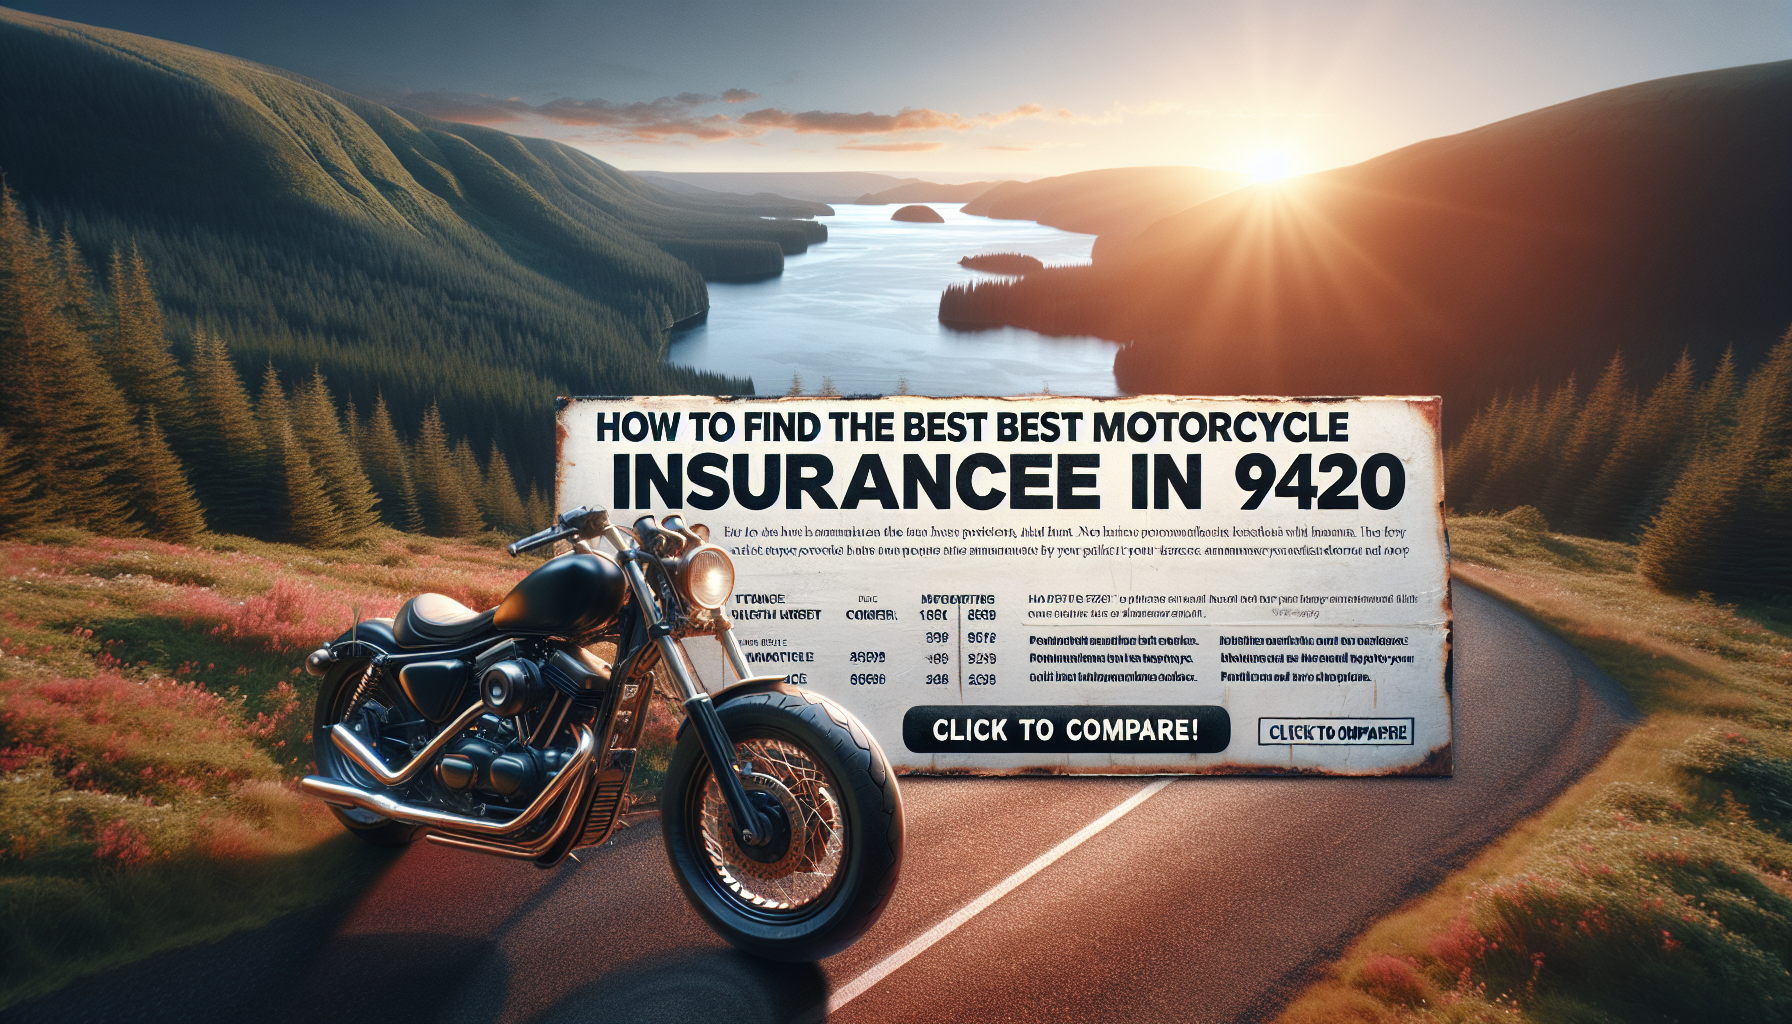 trouvez facilement la meilleure assurance moto dans le 97420 en comparant les offres sur un site comparateur. découvrez comment comparer les offres d'assurance moto 97420 et choisissez la couverture qui vous convient le mieux.